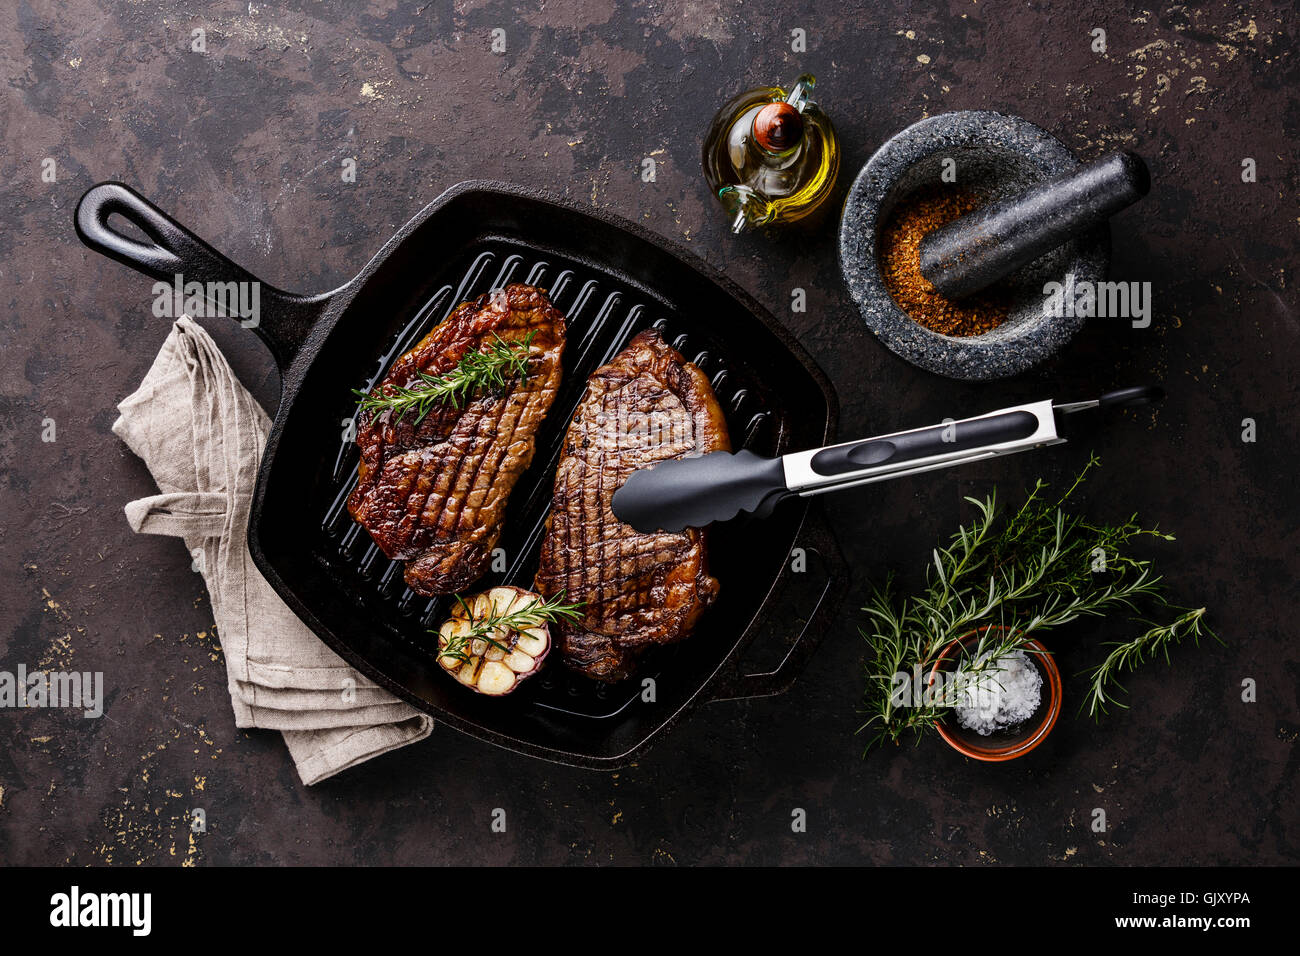 El Black Angus Steak asado solomillo de fritura de parrilla de hierro fundido sobre fondo oscuro Foto de stock